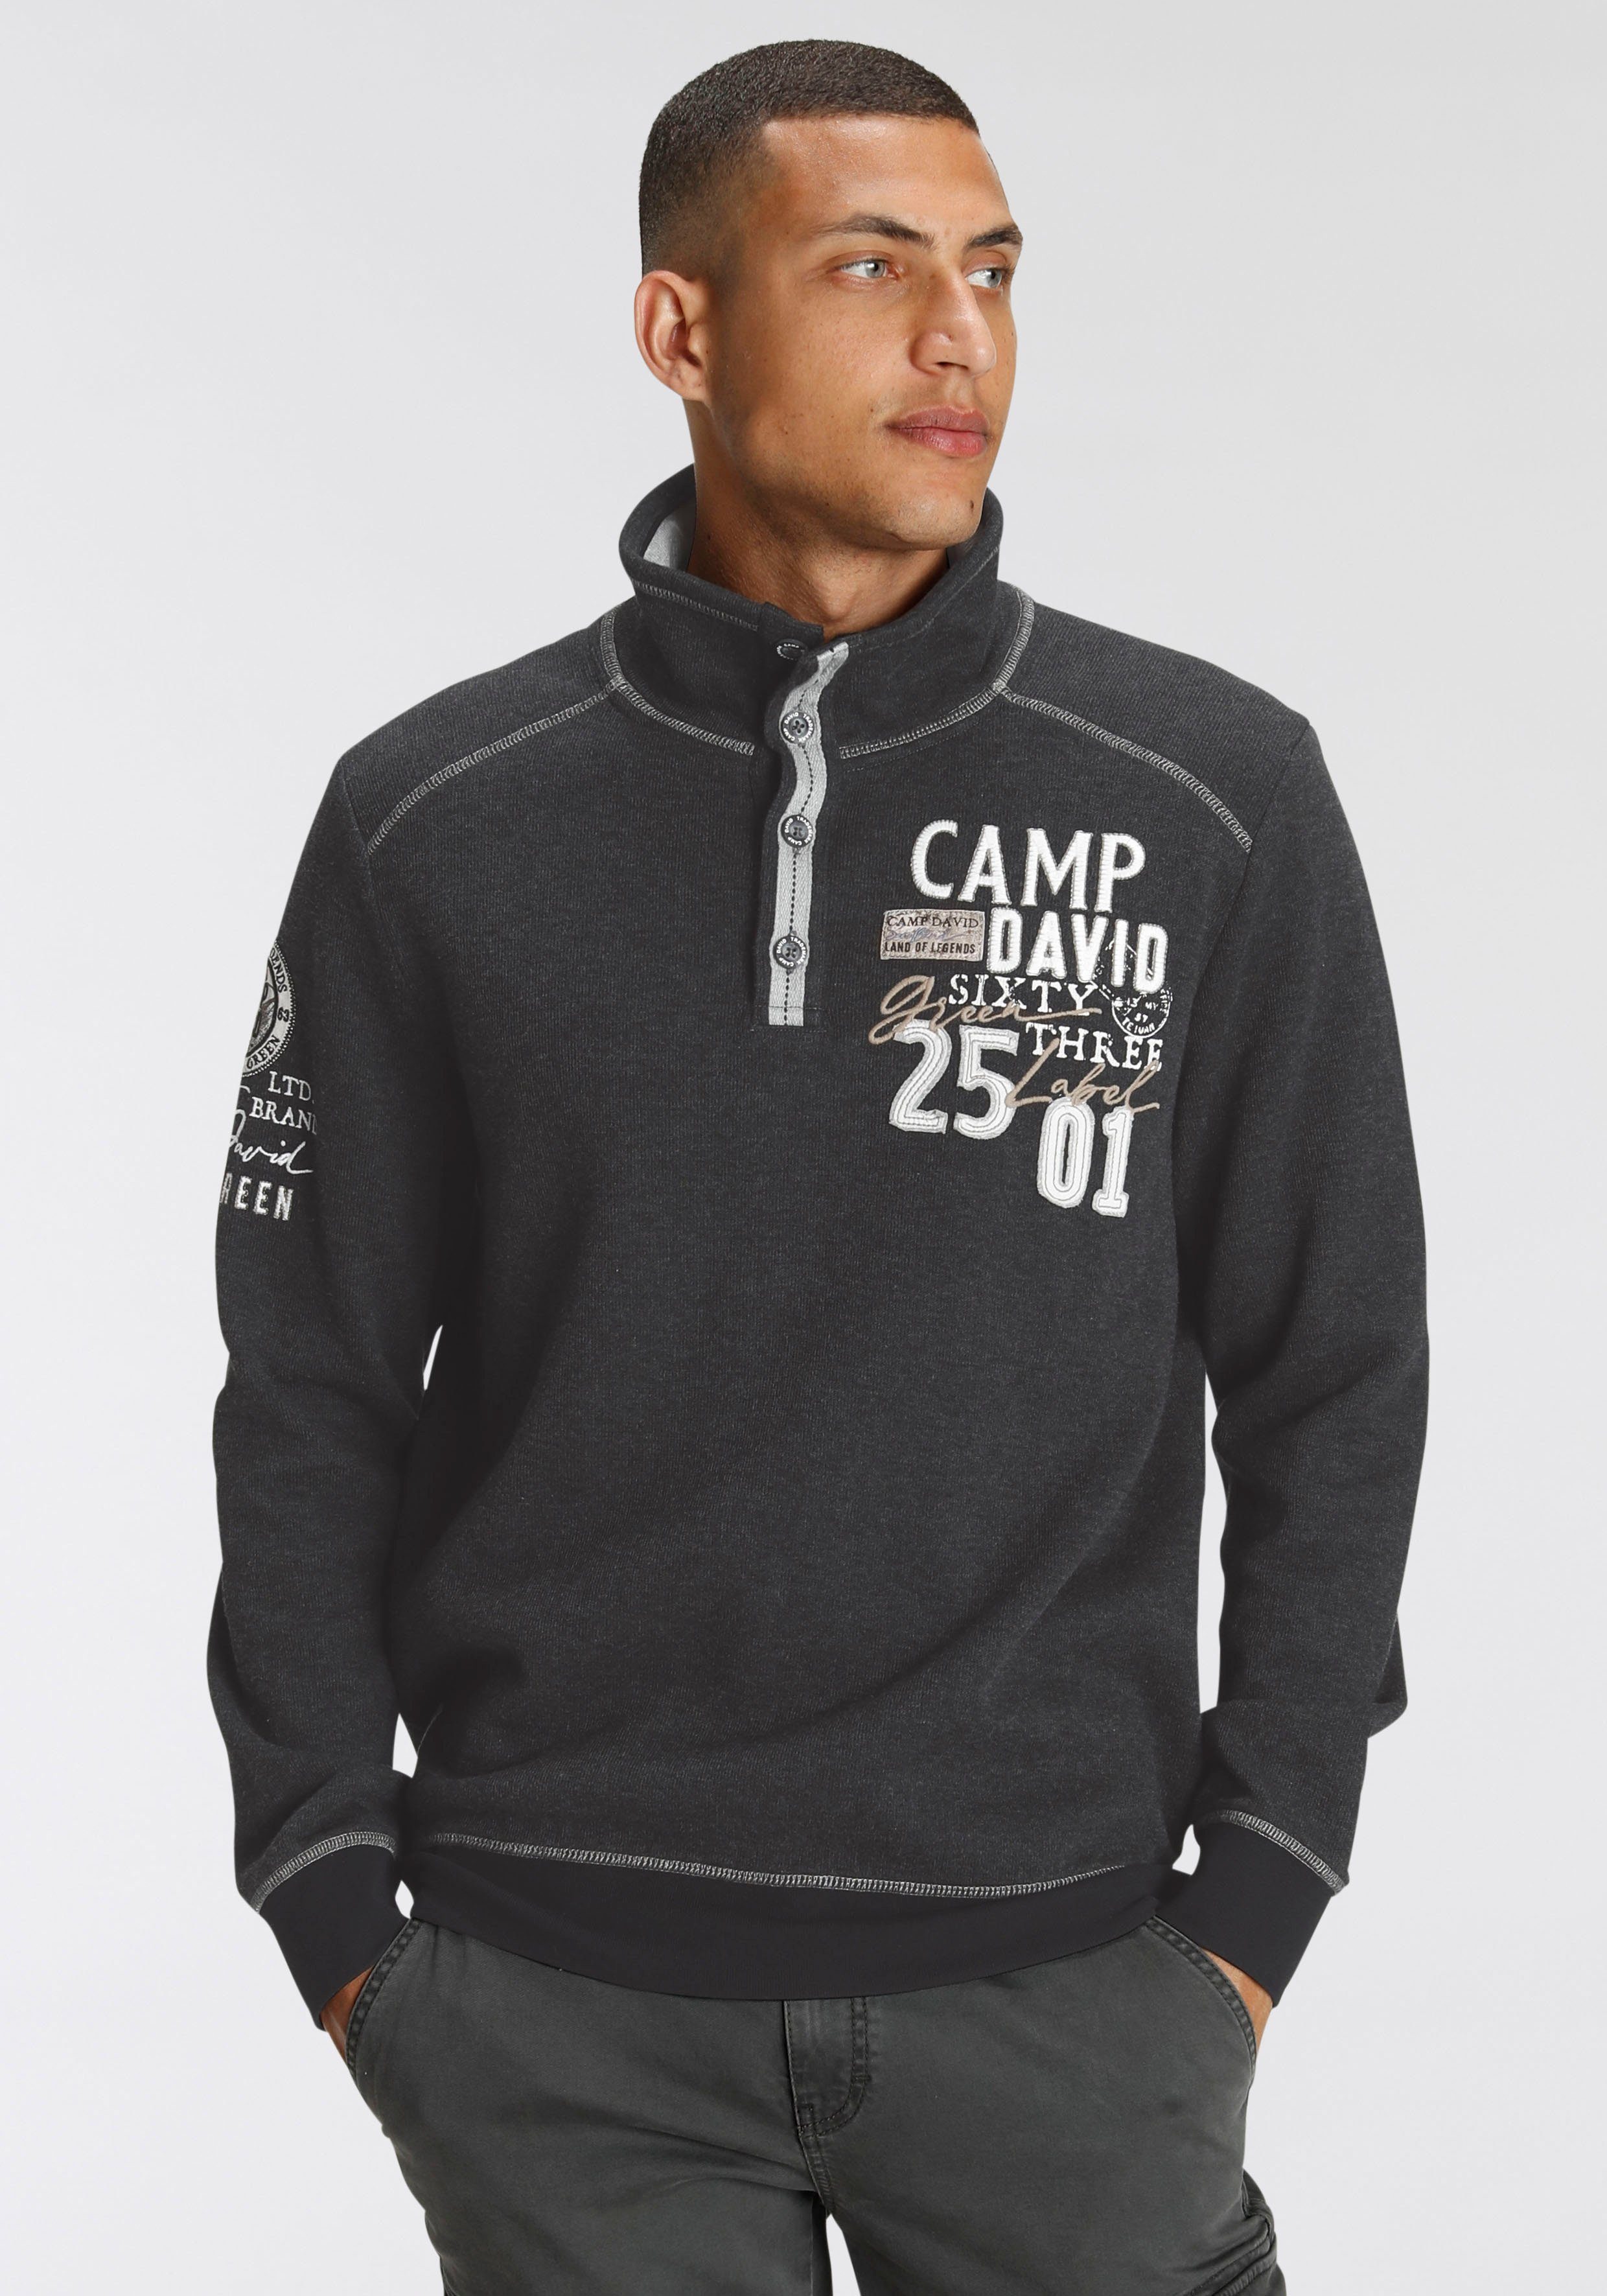 CAMP DAVID Sweatshirt online kaufen | OTTO